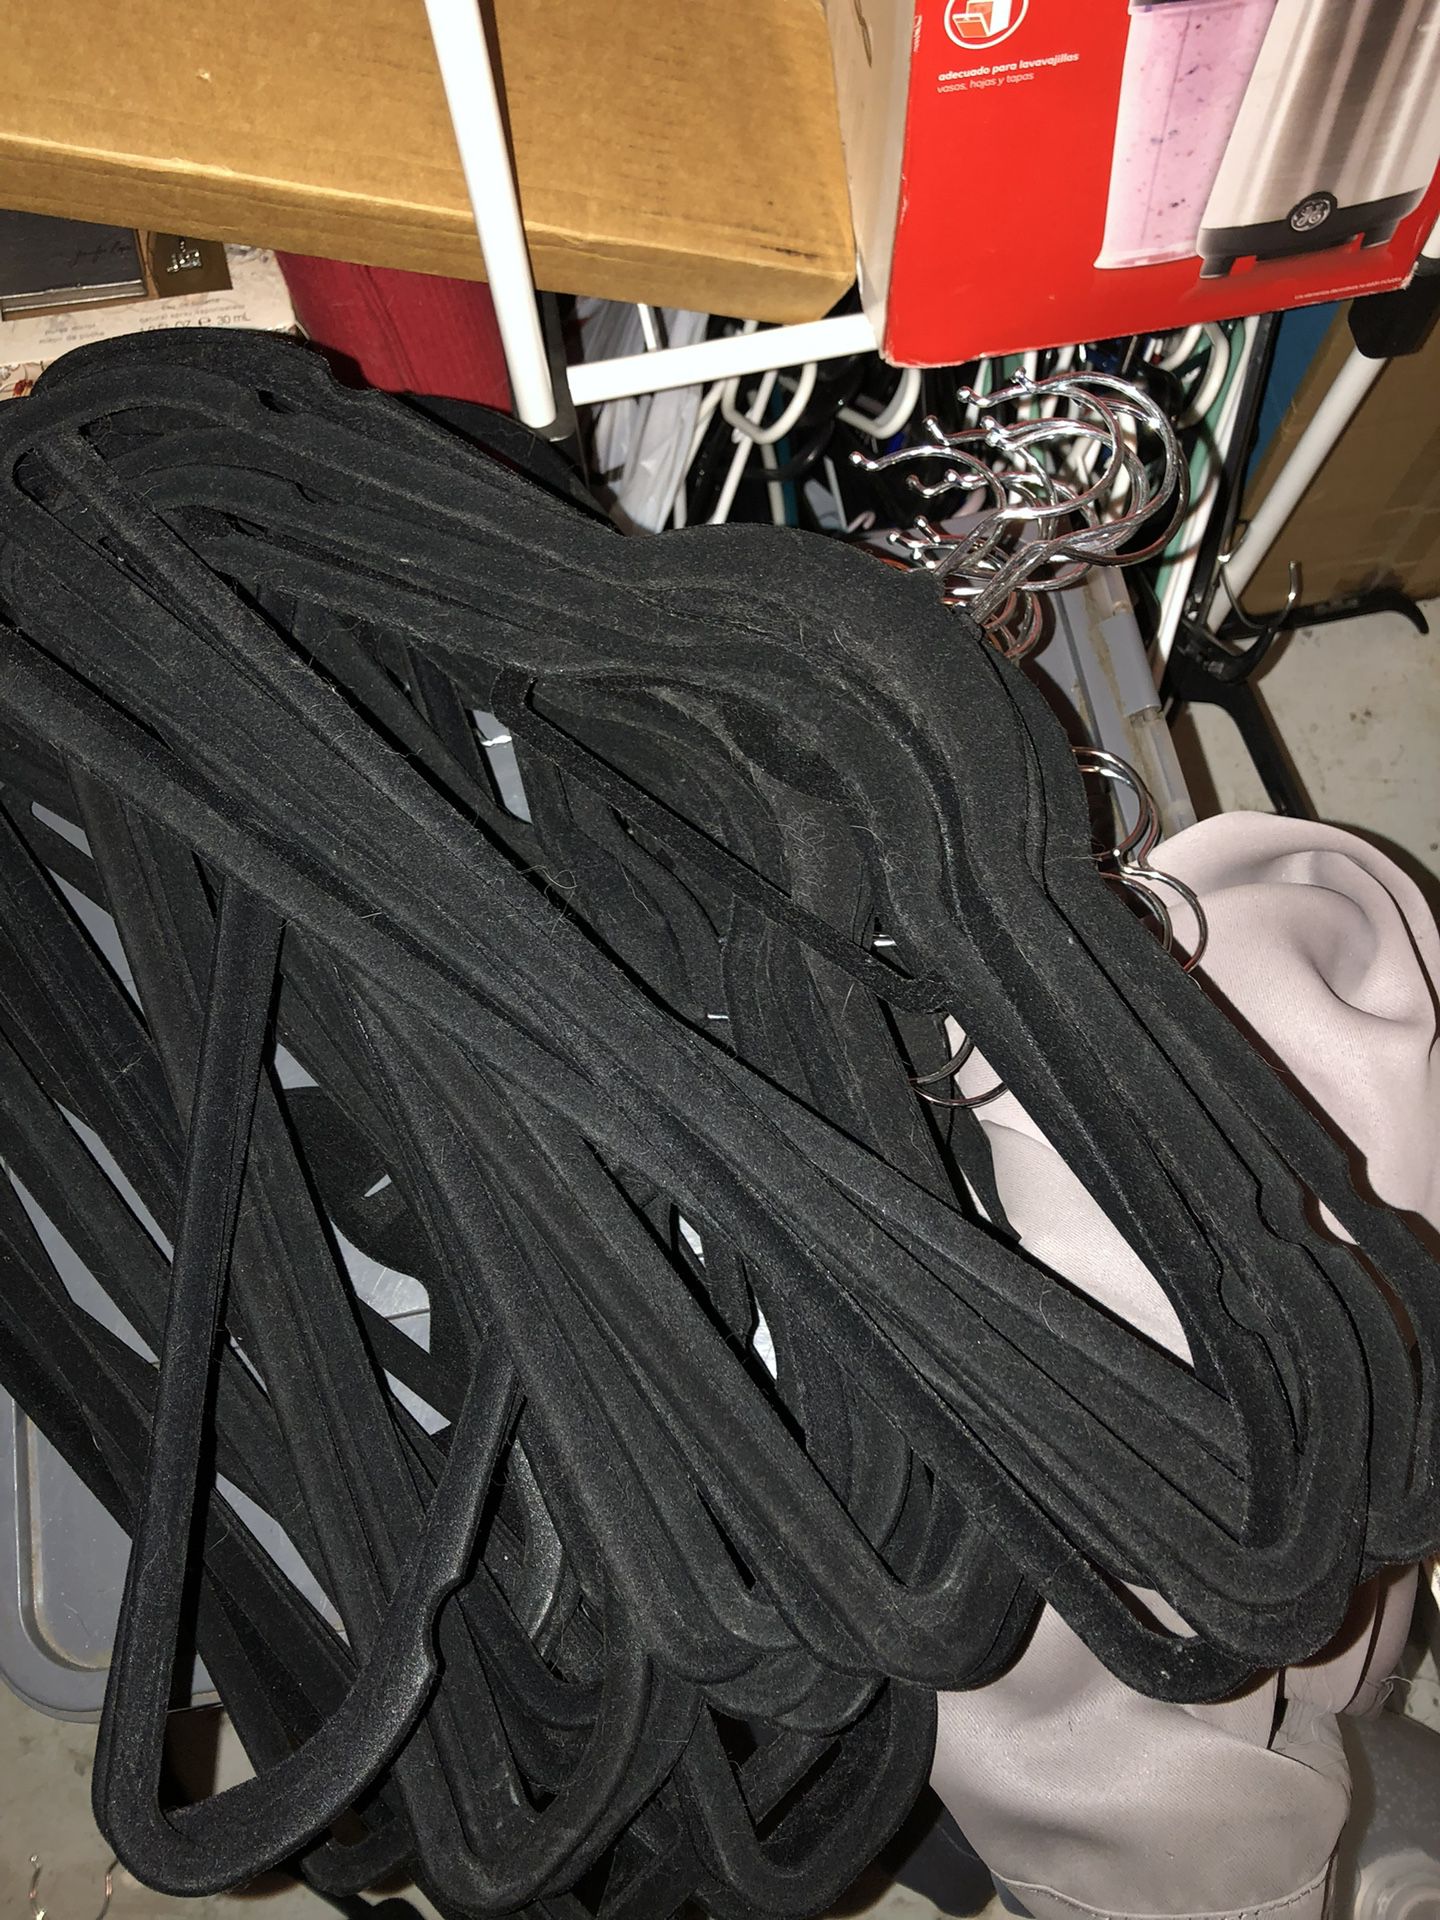 Hangers (50+ Velvet Hangers And 50+ Plastic Hangers)